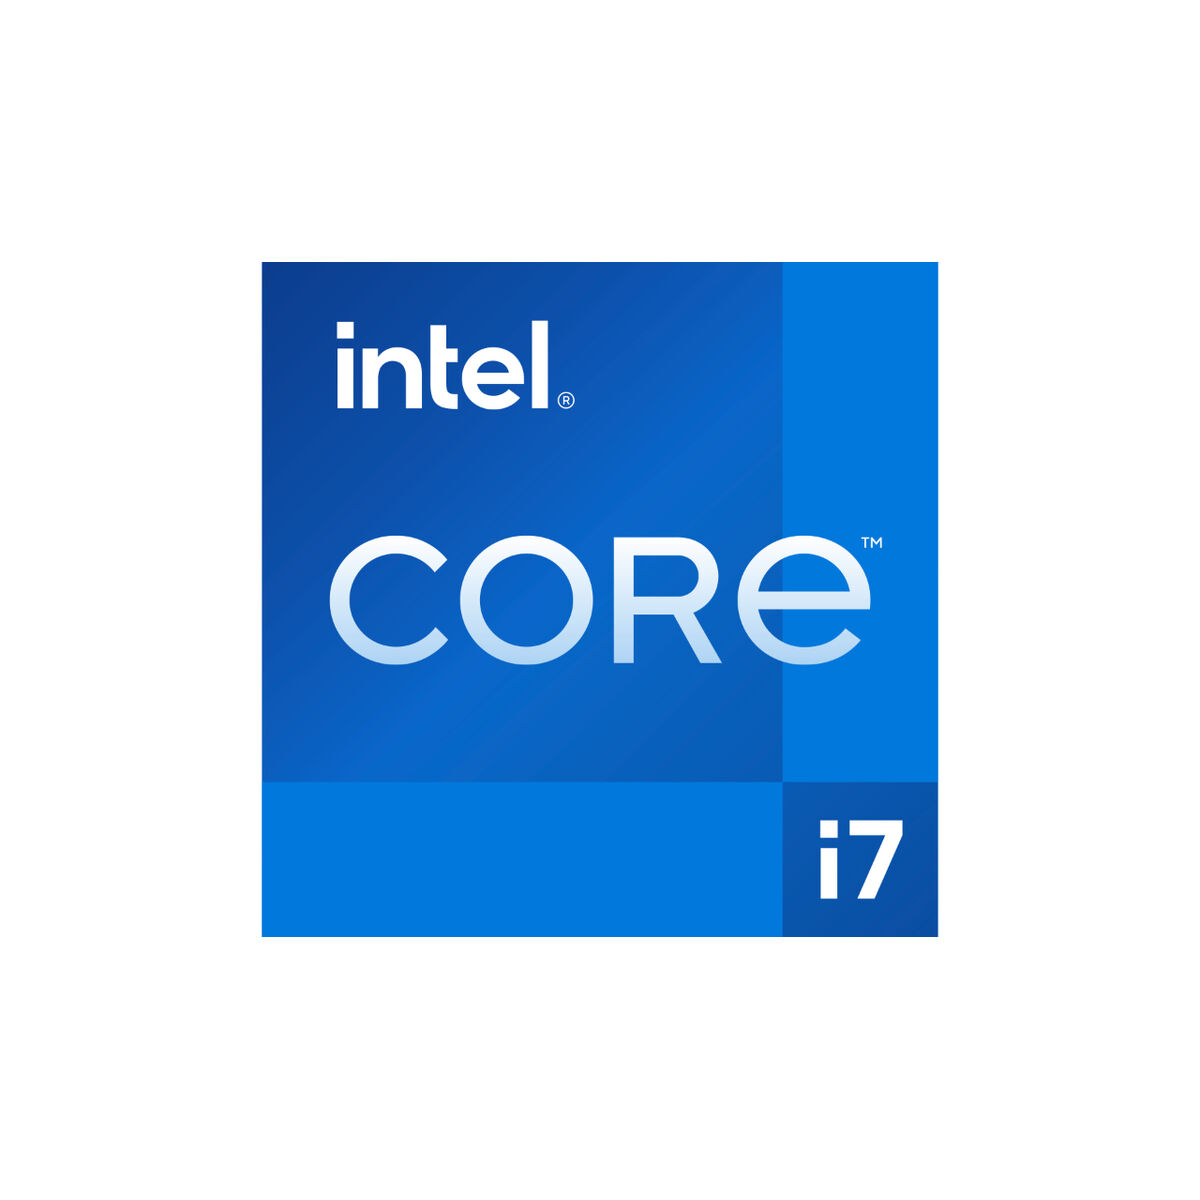 Osta tuote -prosessori Intel i7-13700KF LGA 1700 verkkokaupastamme Korhone: Tietokoneet & Elektroniikka 20% alennuksella koodilla VIIKONLOPPU